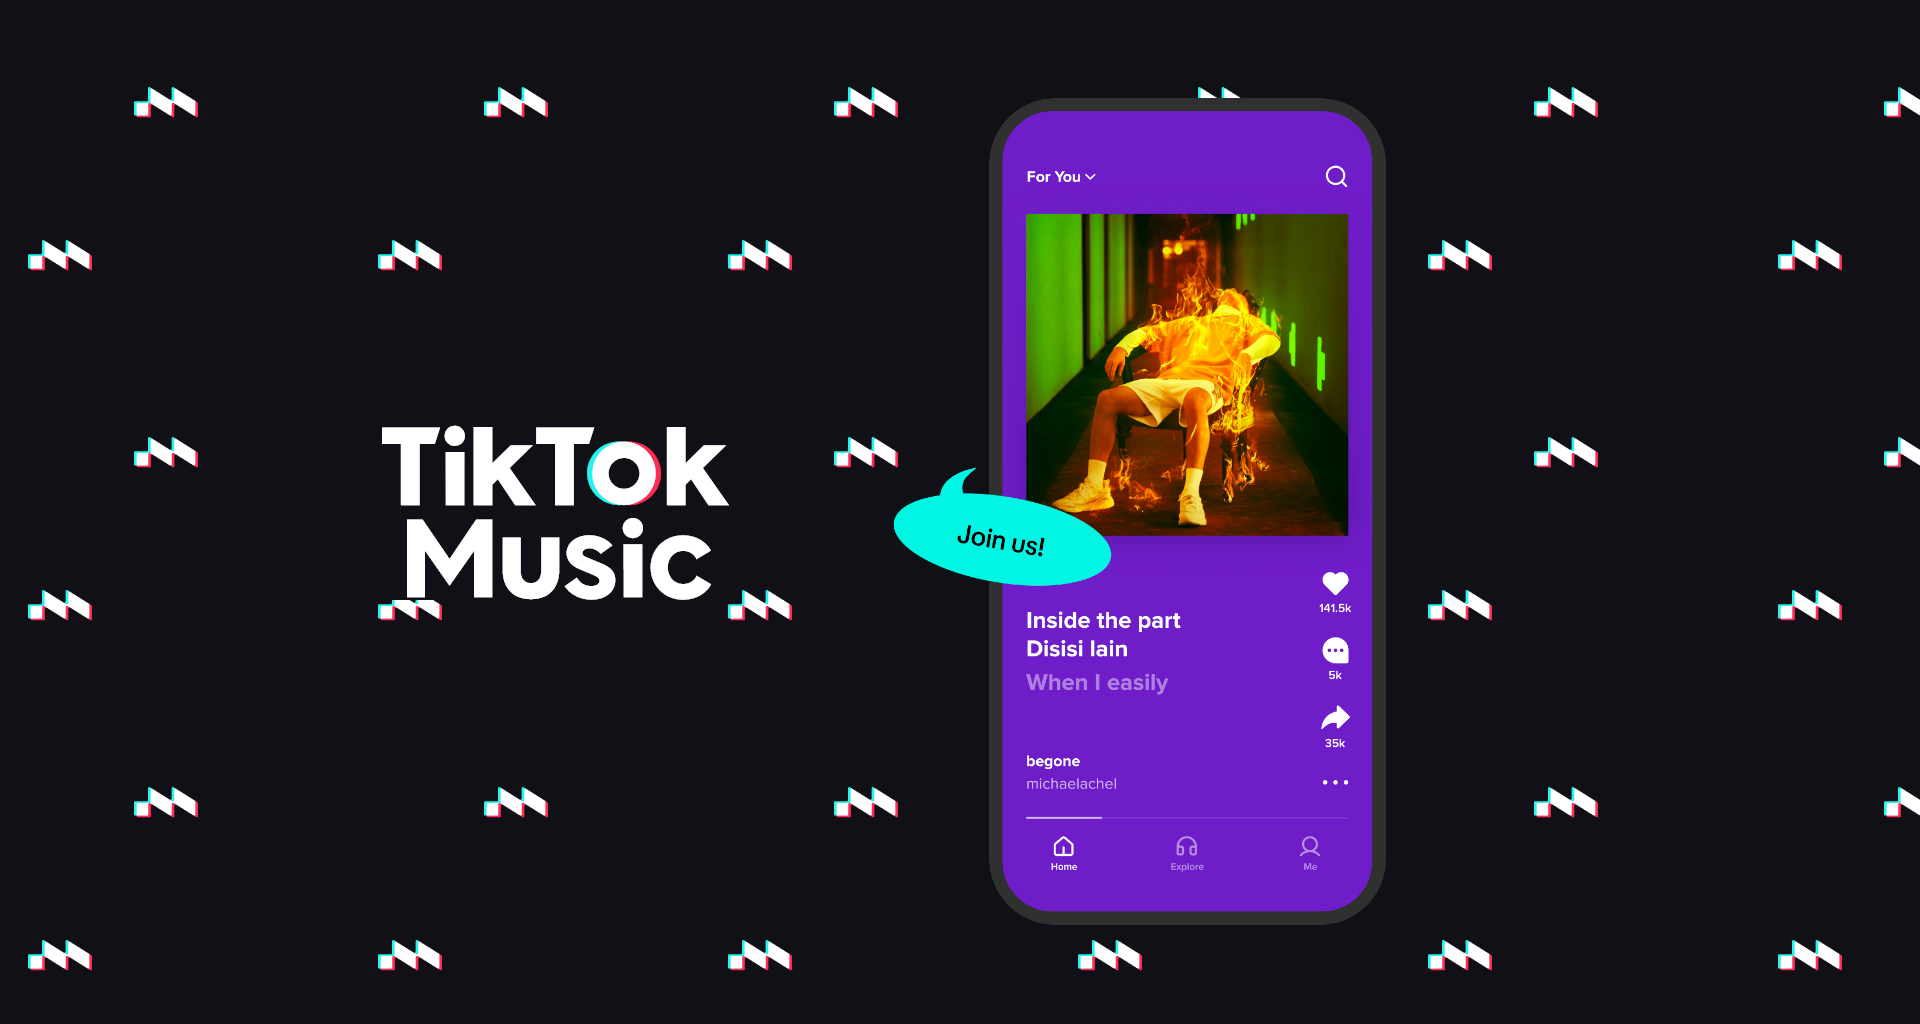 Tiktok music é lançado com planos mais baratos que spotify